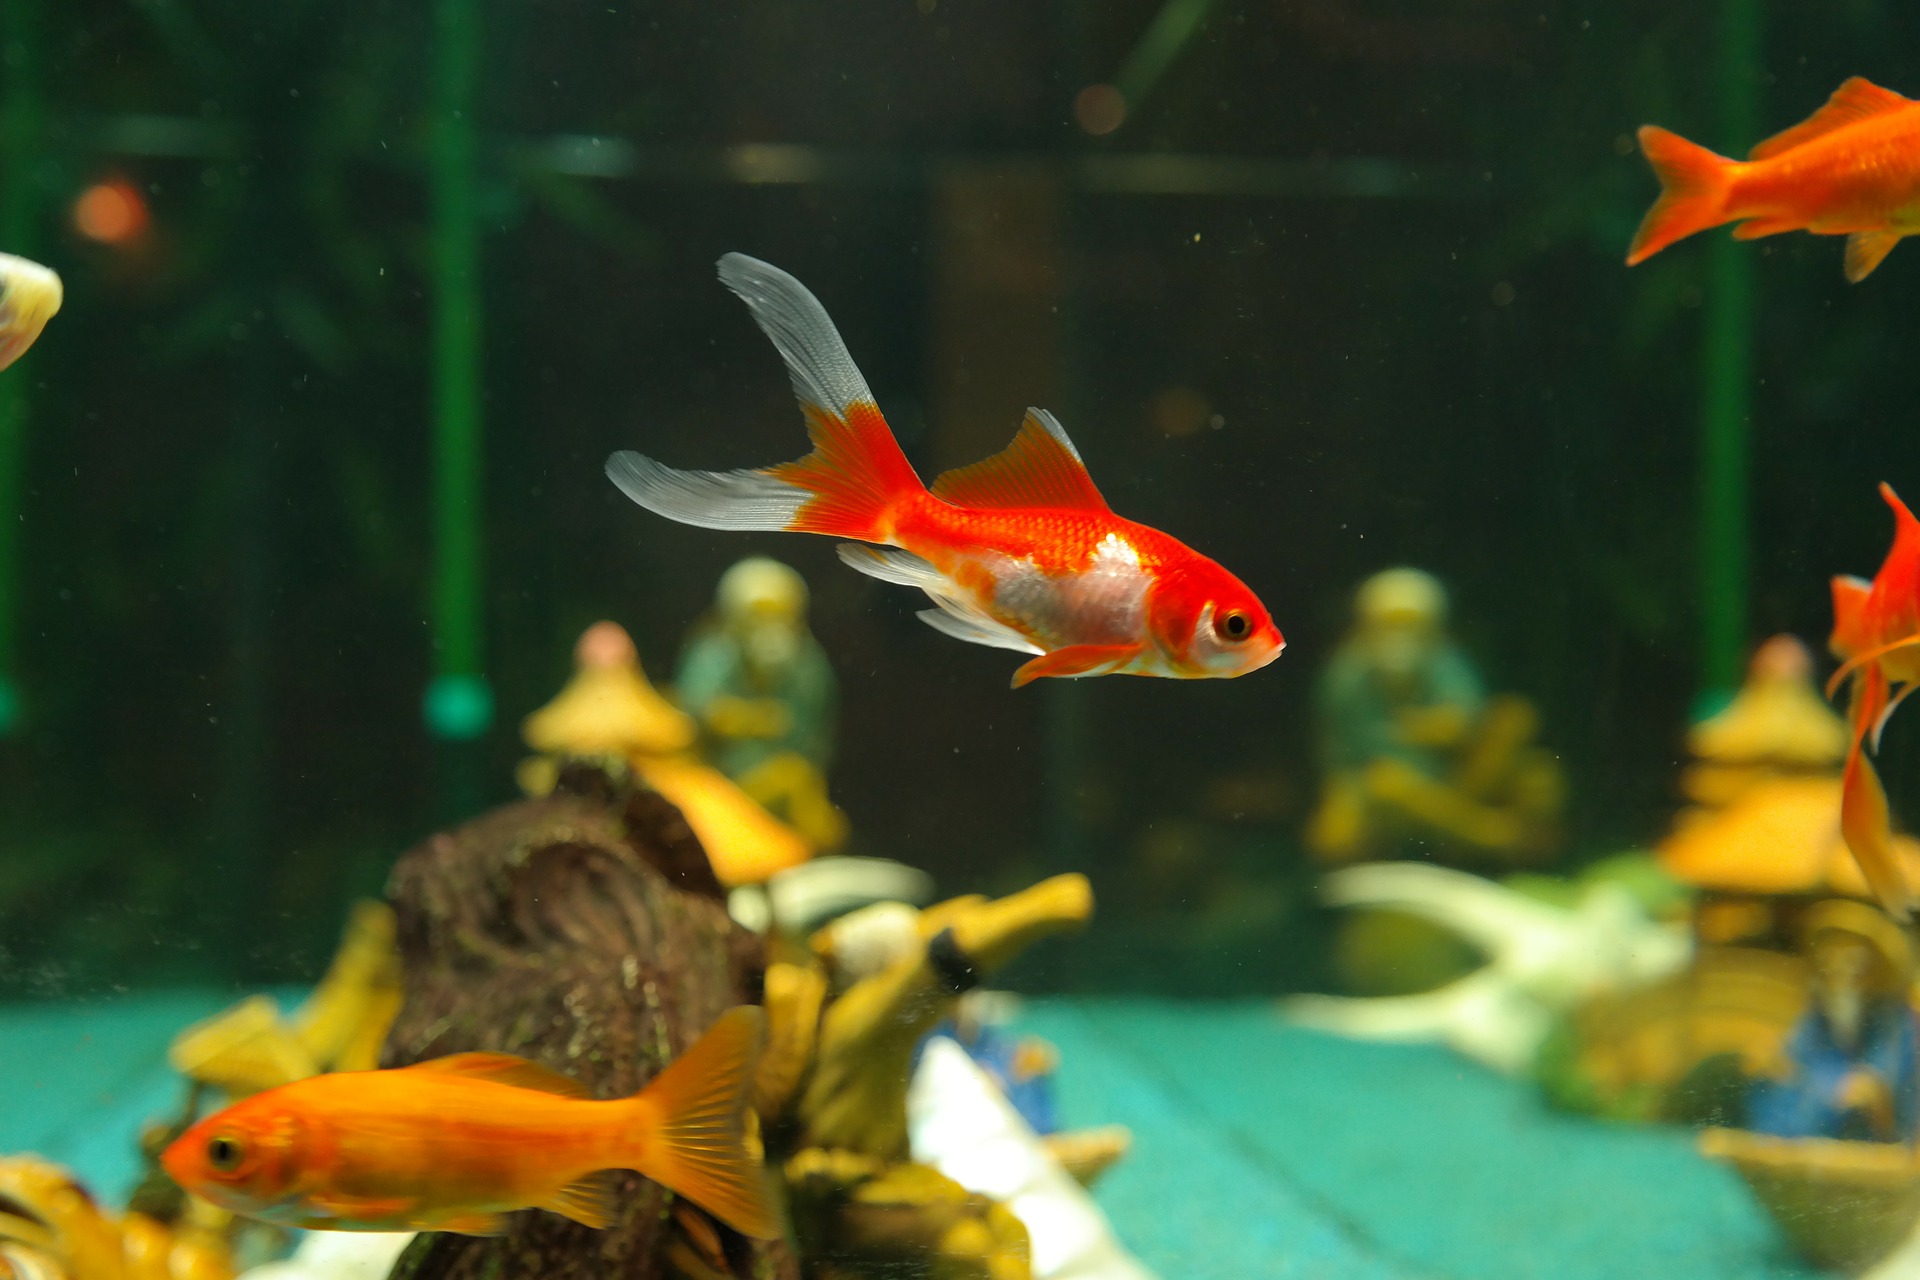 multiple goldfish live together